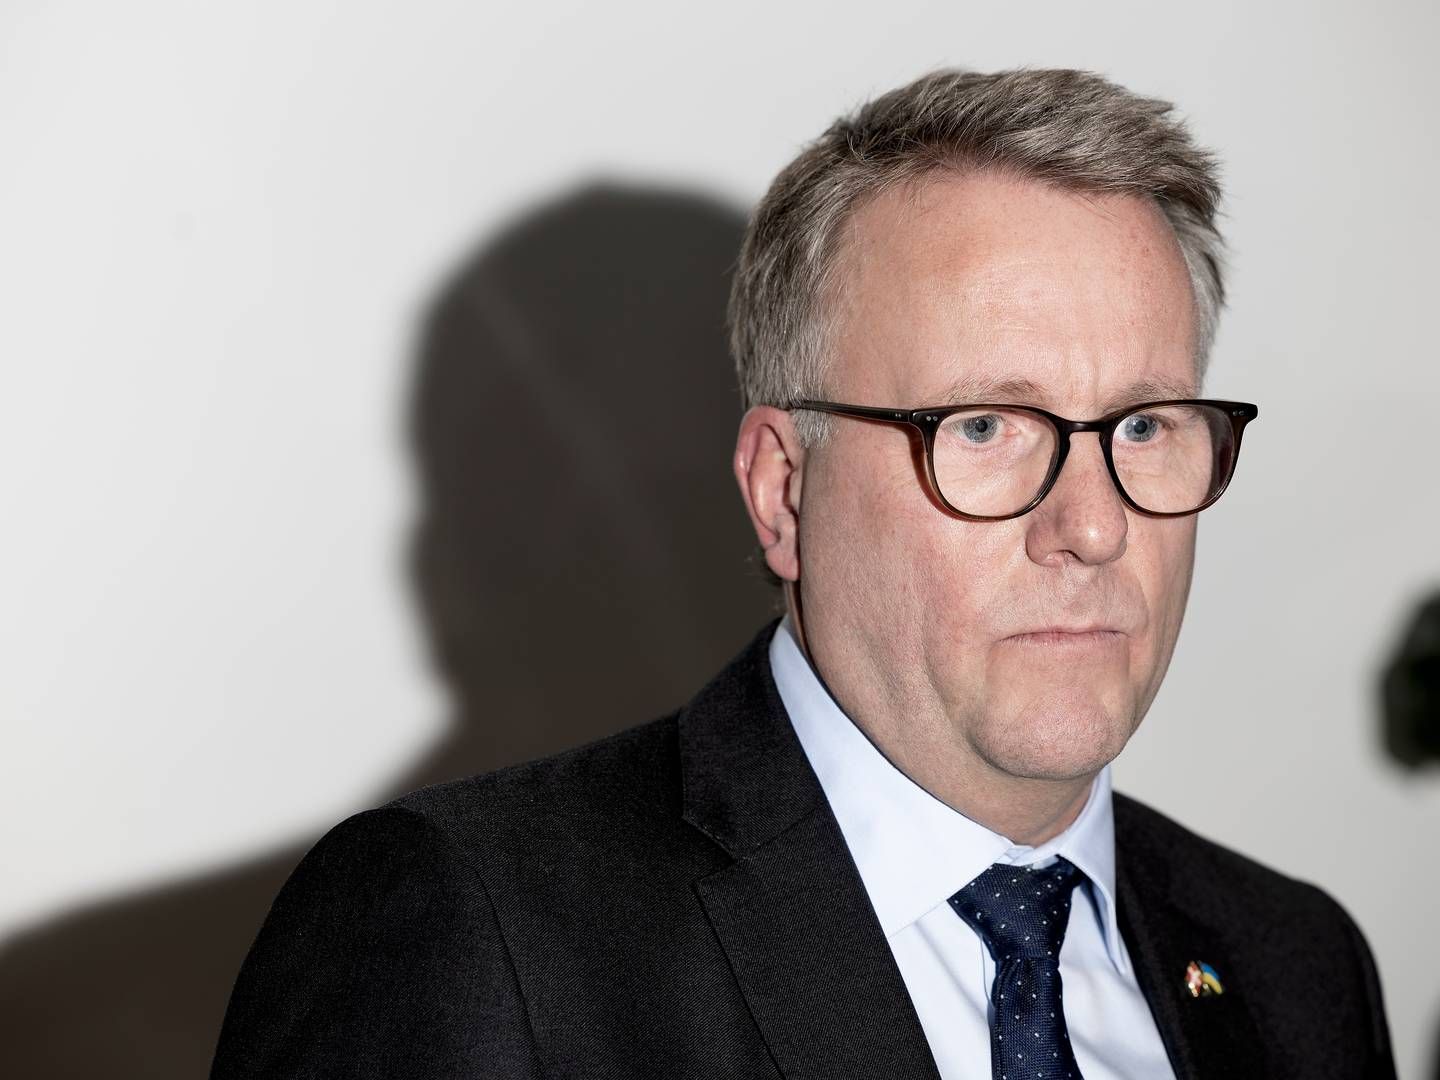 Erhvervsminister Morten Bødskov (S) forventer, at bankerne lever op til deres ansvar i kampen mod kriminalitet. | Foto: Thomas Borberg